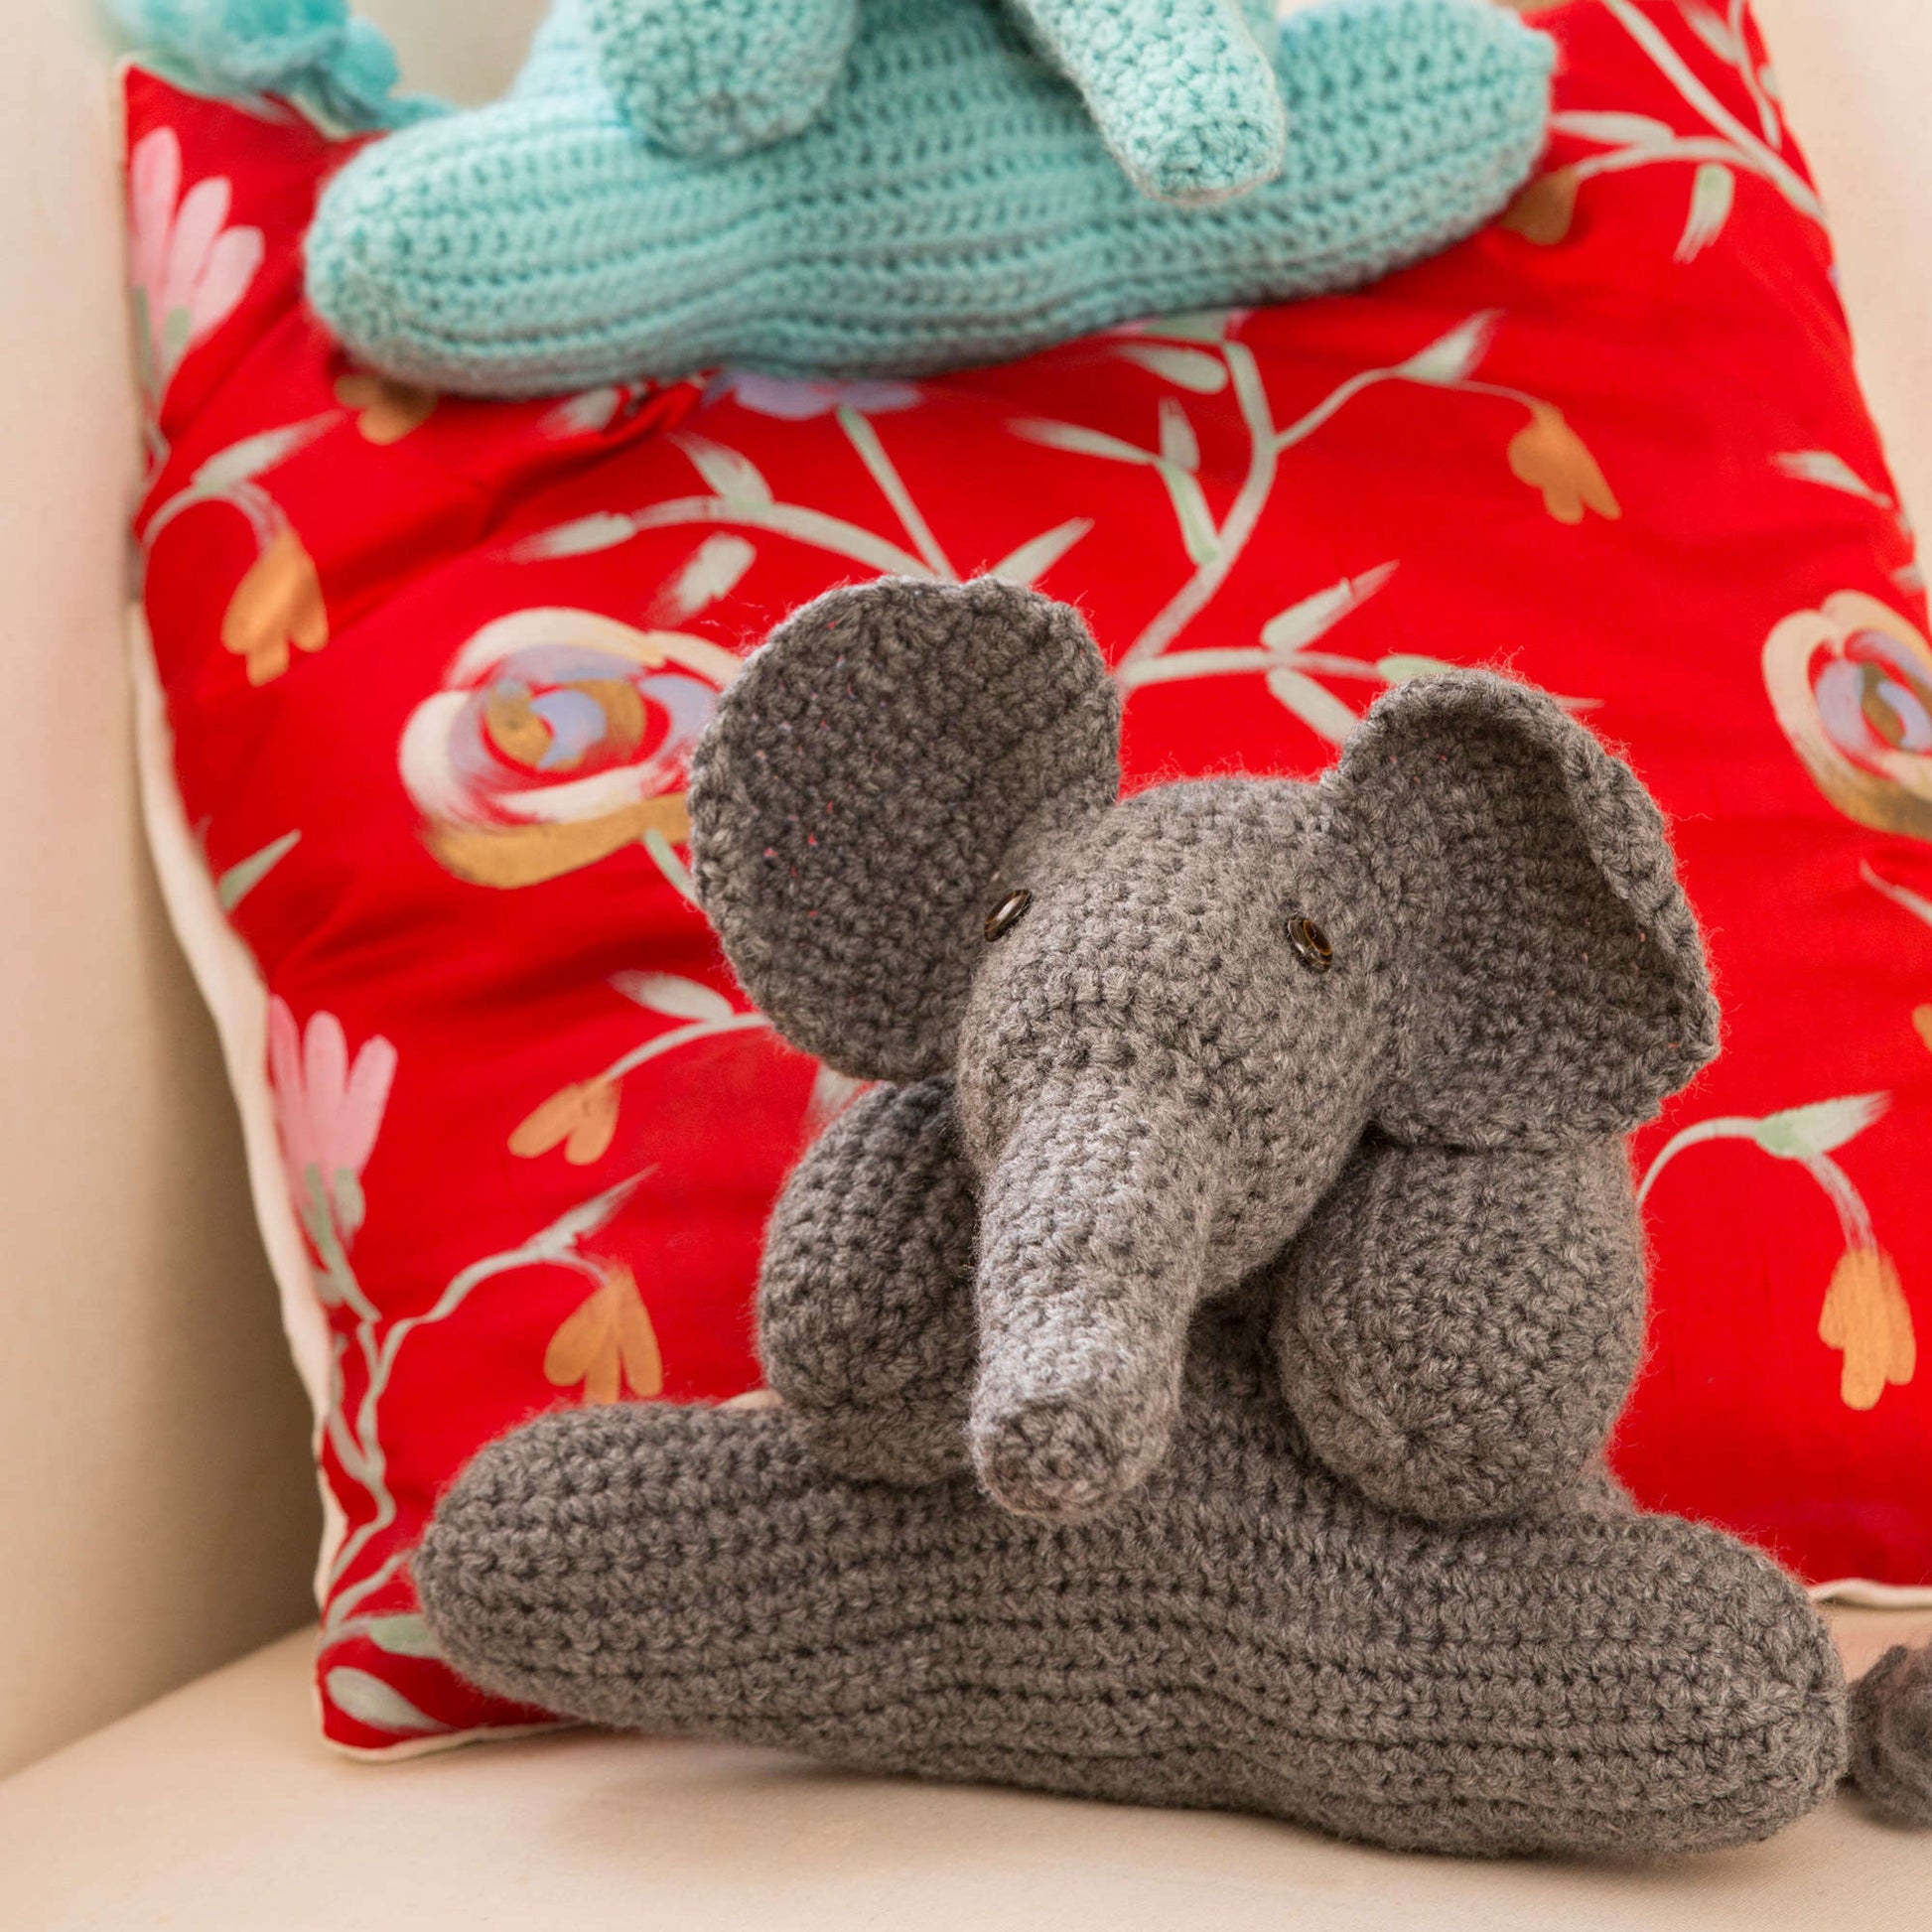 Free Red Heart Elephant Friends Crochet Pattern